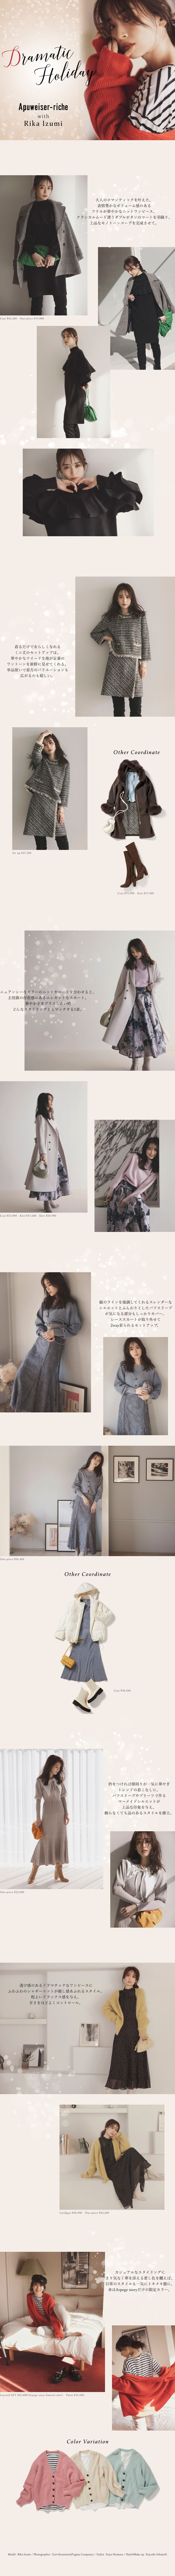 WEB ALBUM vol.65 - Apuweiser-riche × Rika Izumi